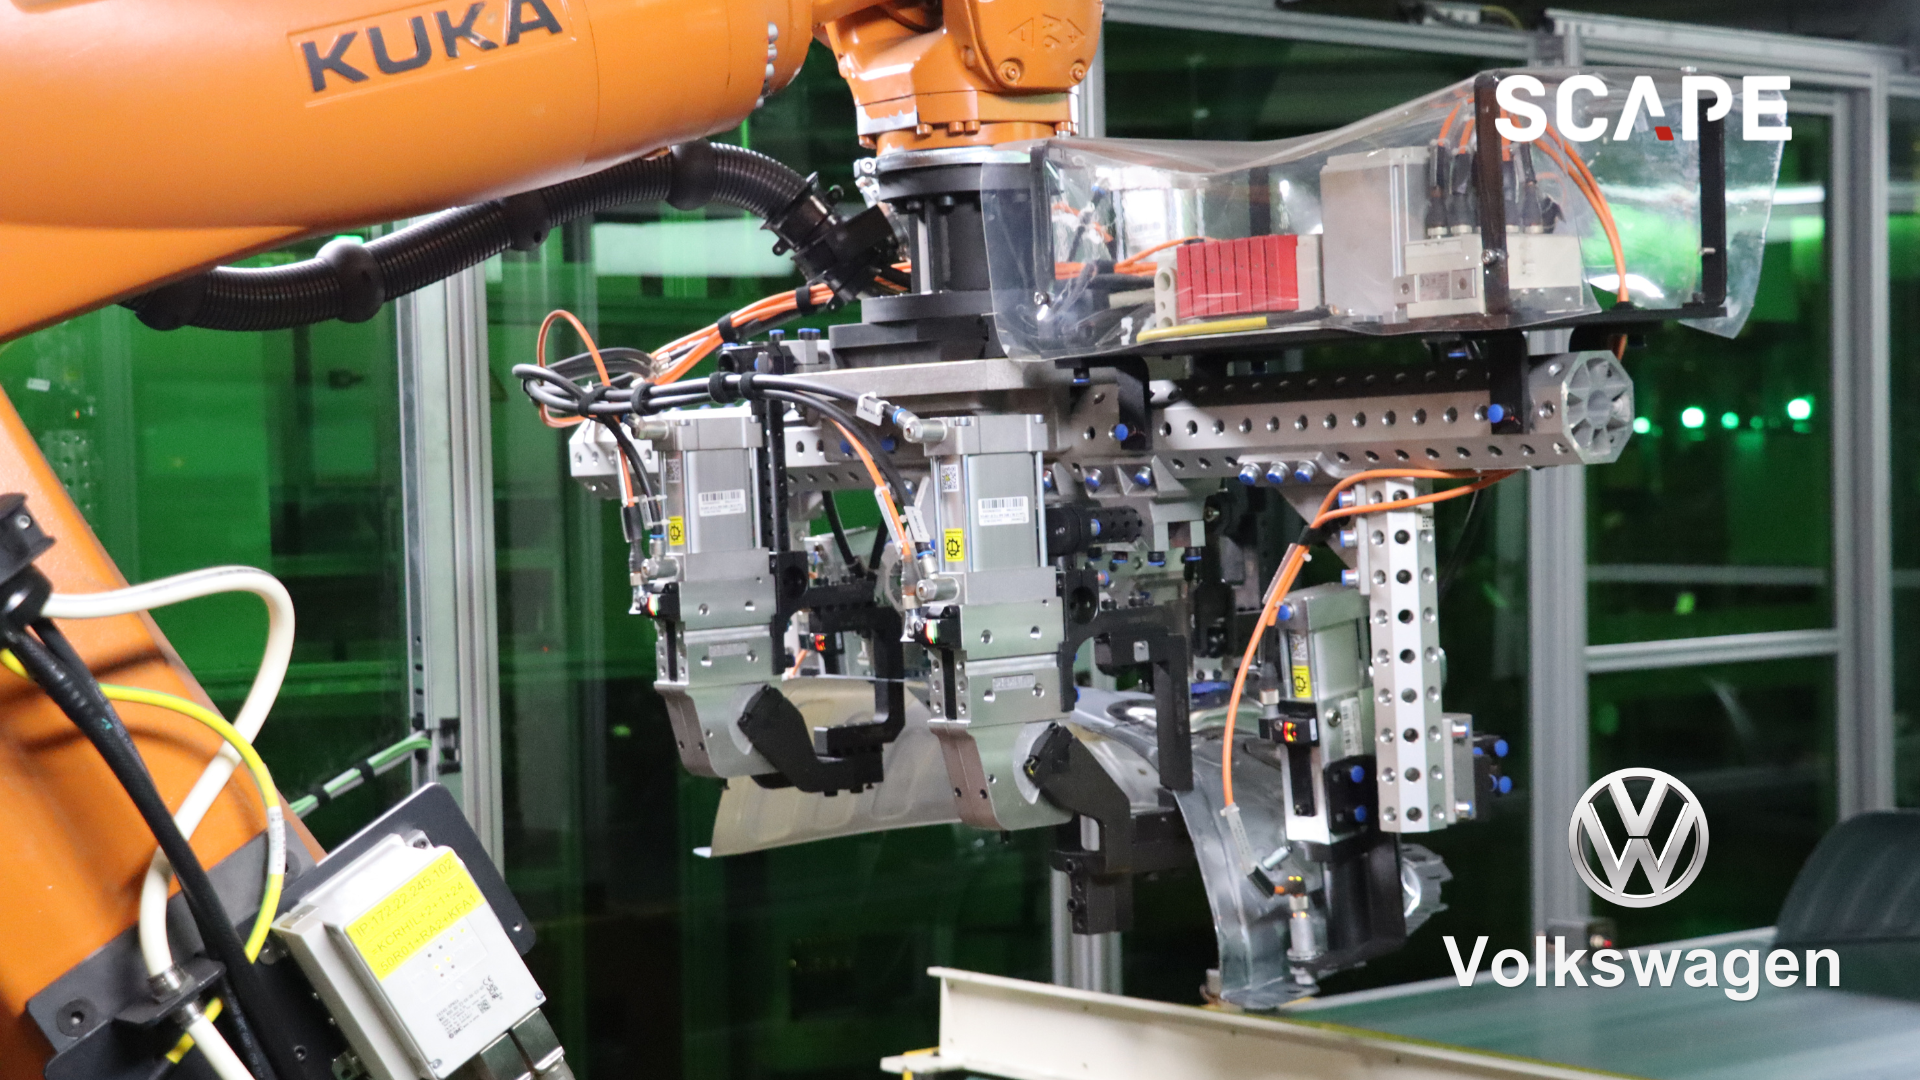 SCAPE Bin-Picking-Lösung integriert auf einem KUKA Industrieroboter zur Automatisierung der Radhaushandhabung bei Volkswagen